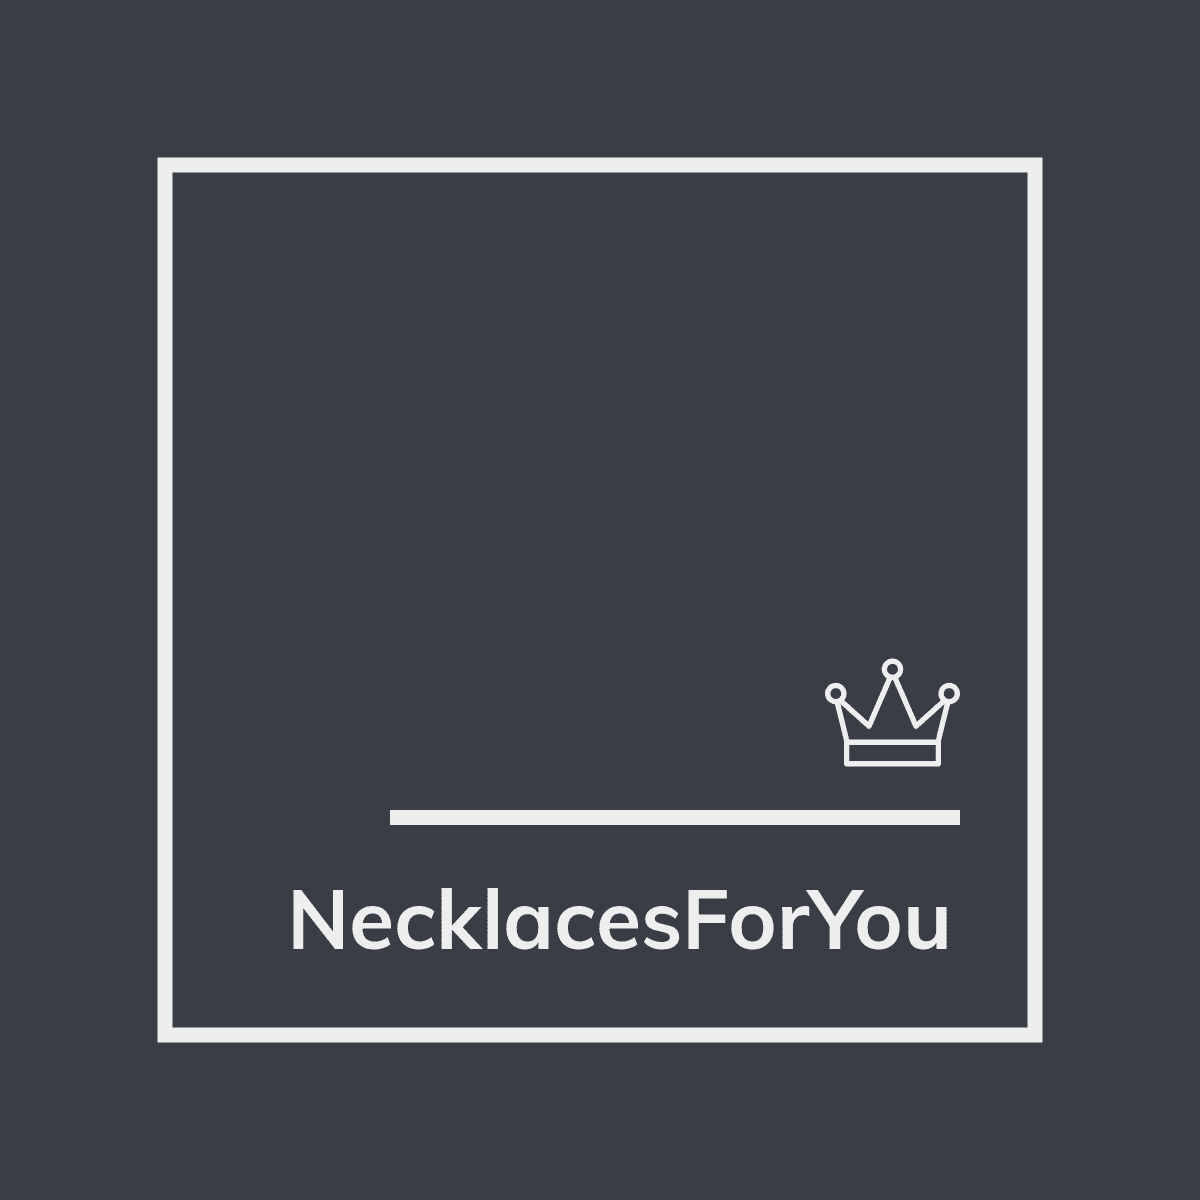 Necklacesforyou – NecklacesForYou